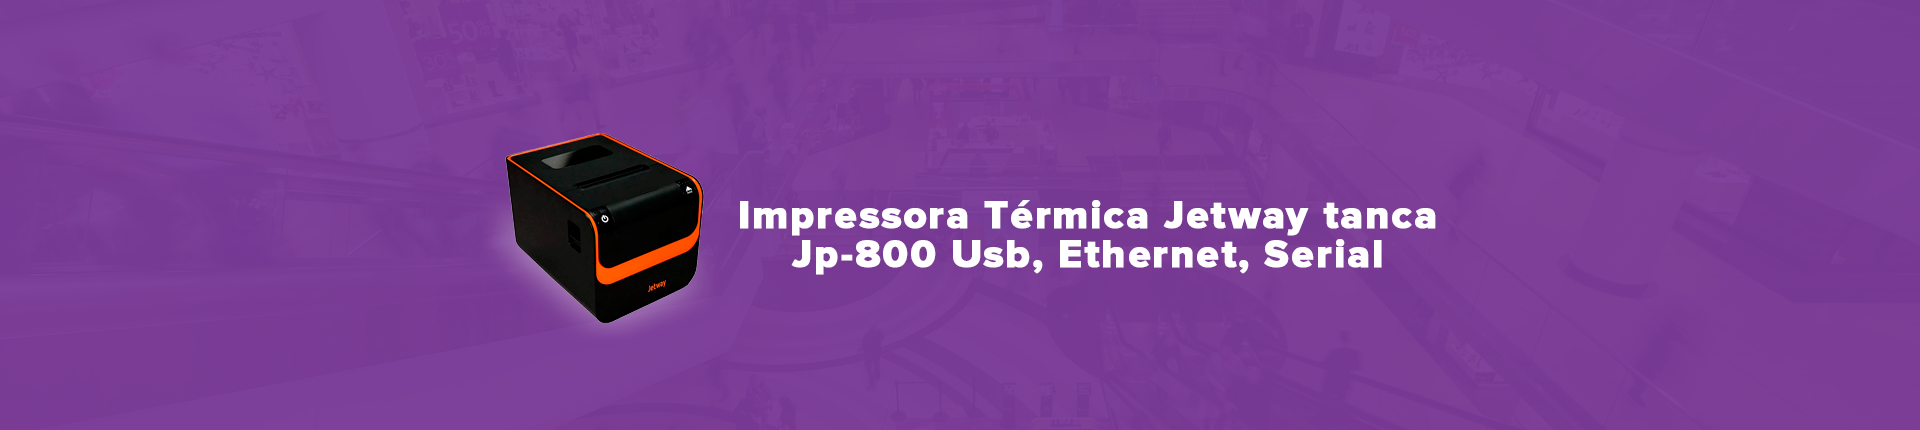 Full Banner Impressora Térmica Jetway tanca Jp-800 Usb, Ethernet, Serial